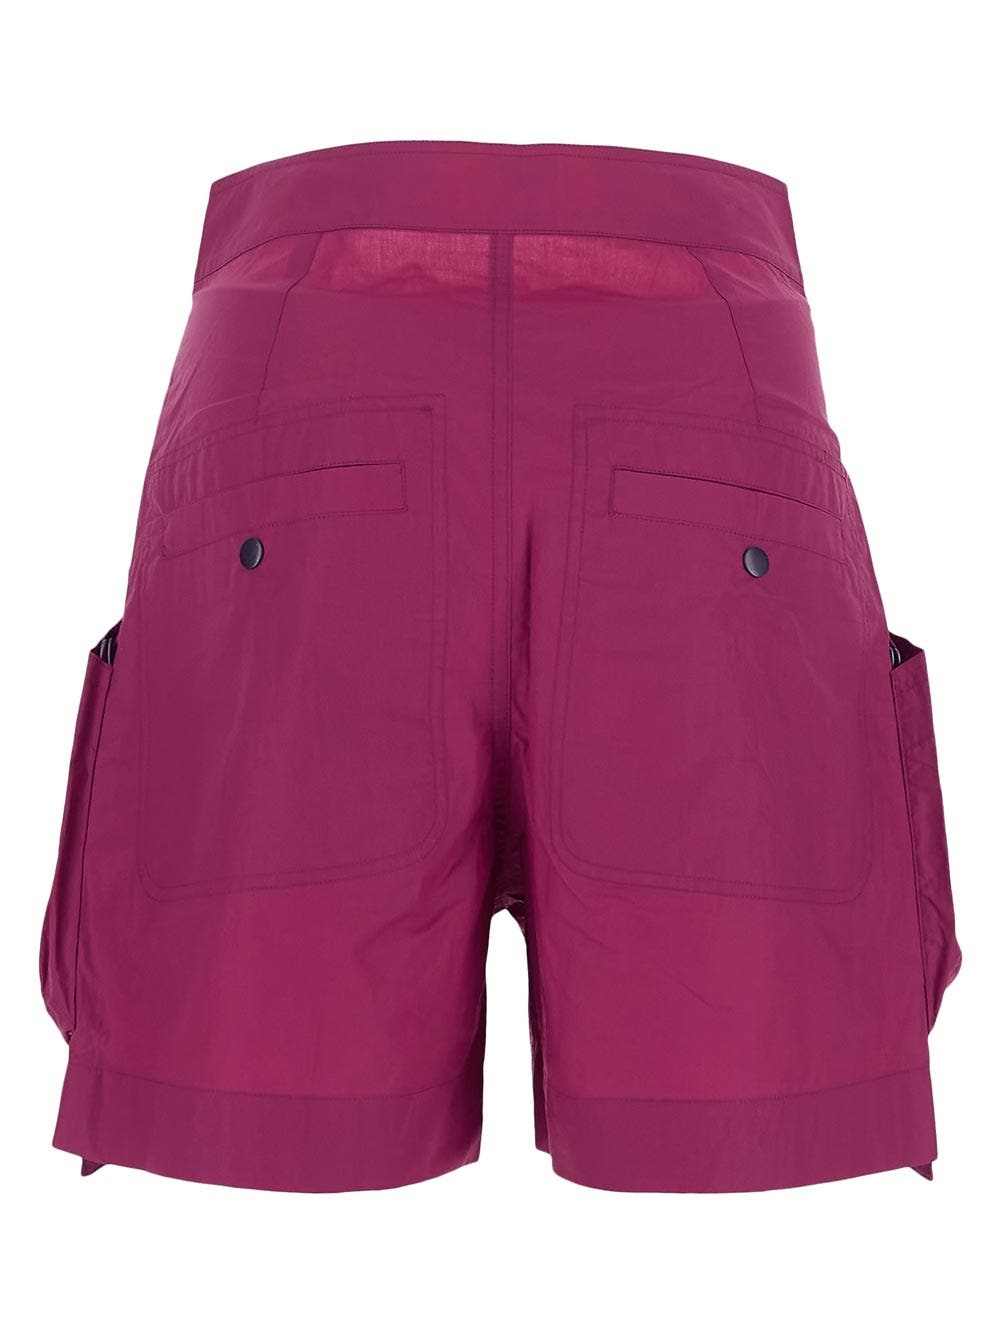 Ferdini Shorts - 2